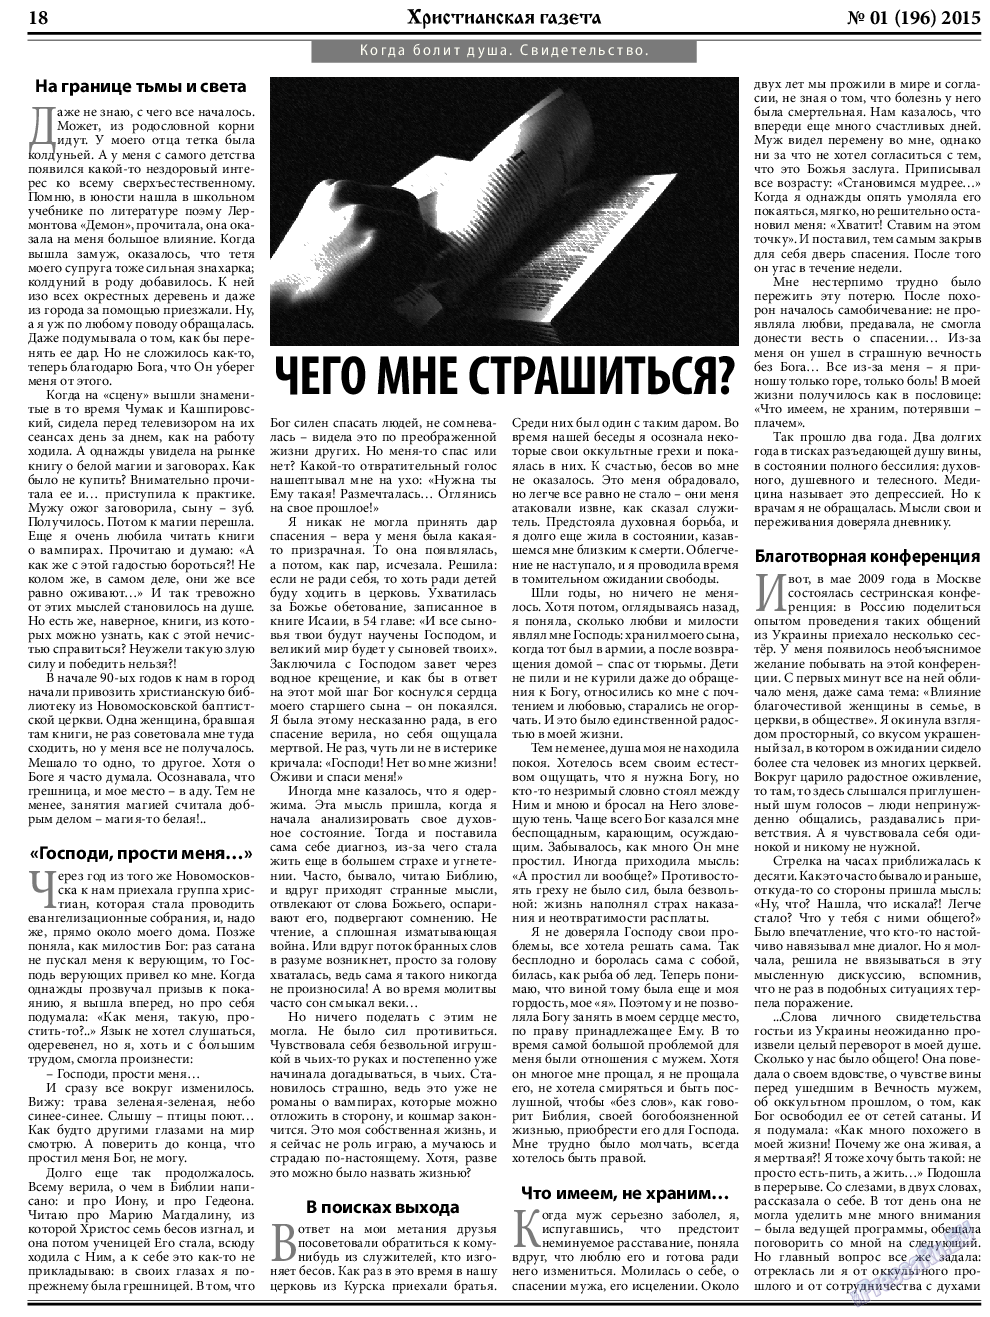 Христианская газета, газета. 2015 №1 стр.26